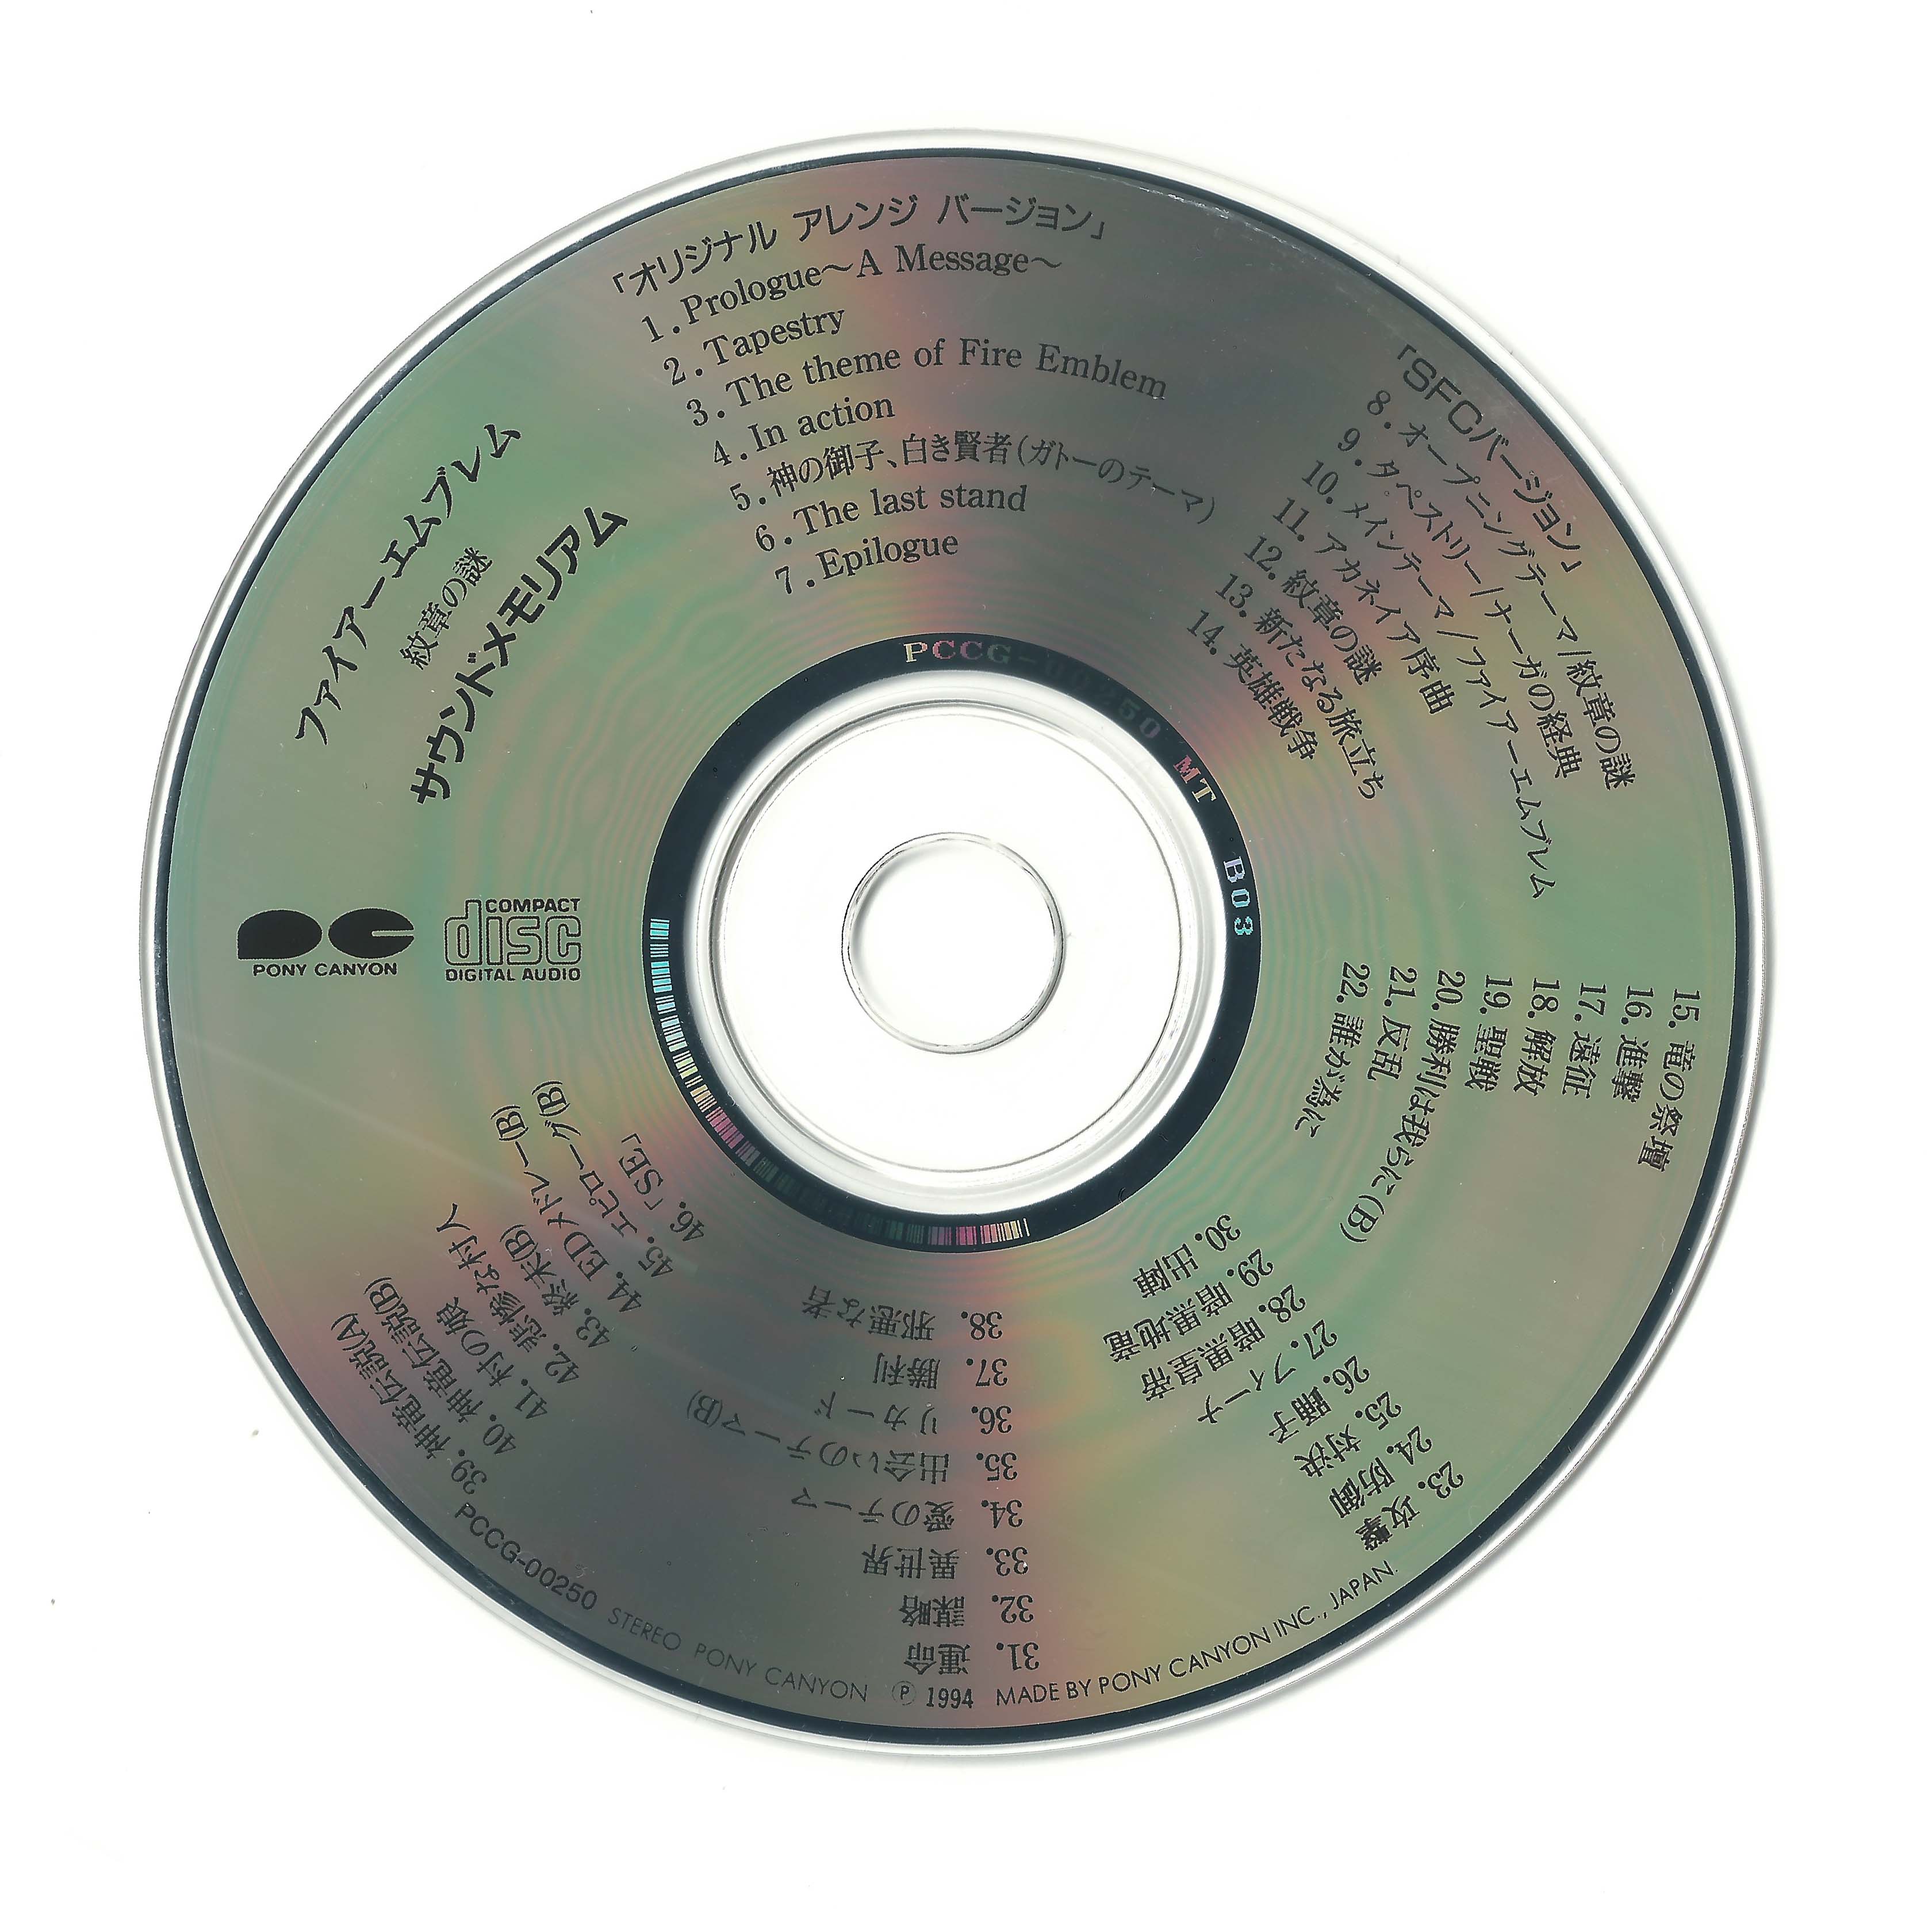 Disc.jpg